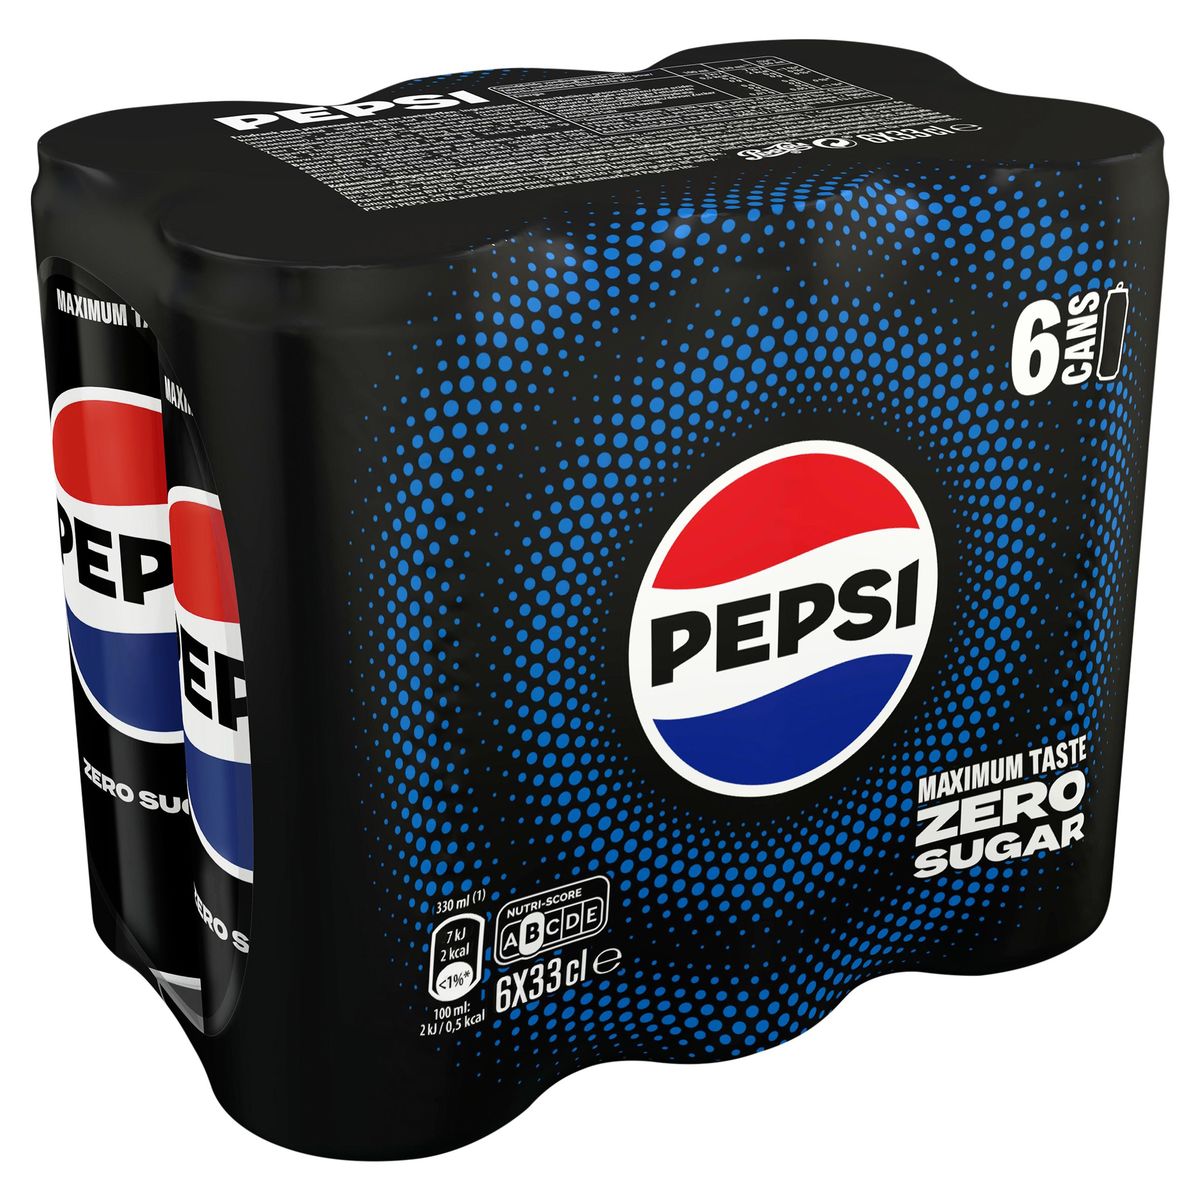 Pepsi Zero Sugar Cola 6 x 33 cl